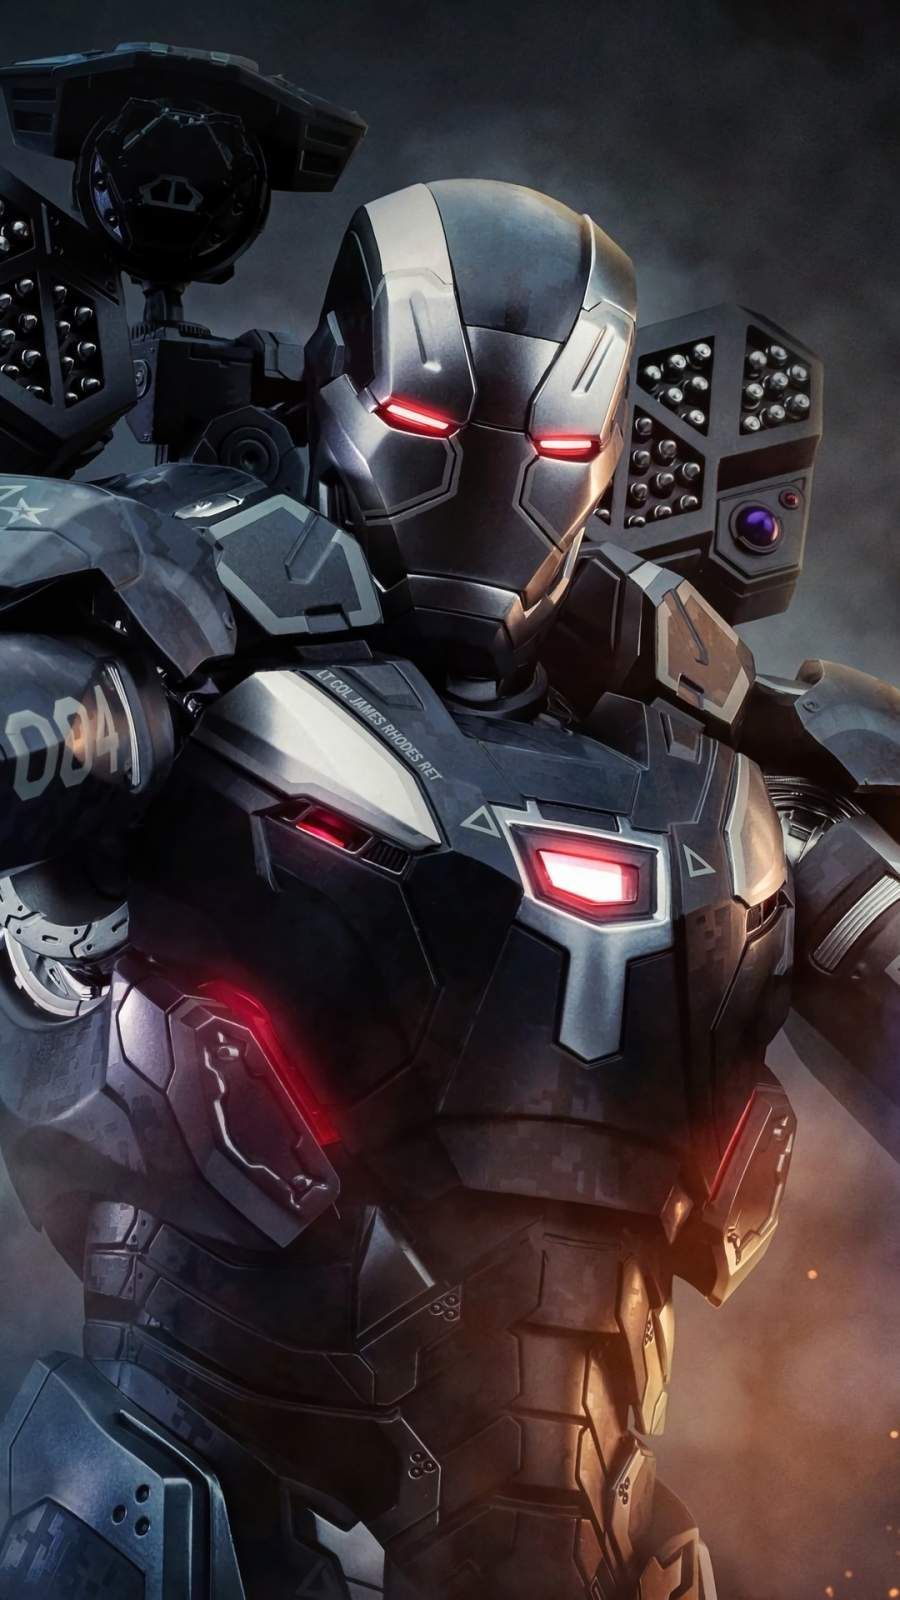 War Machine 4k iPhone Wallpaper. Iron man avengers